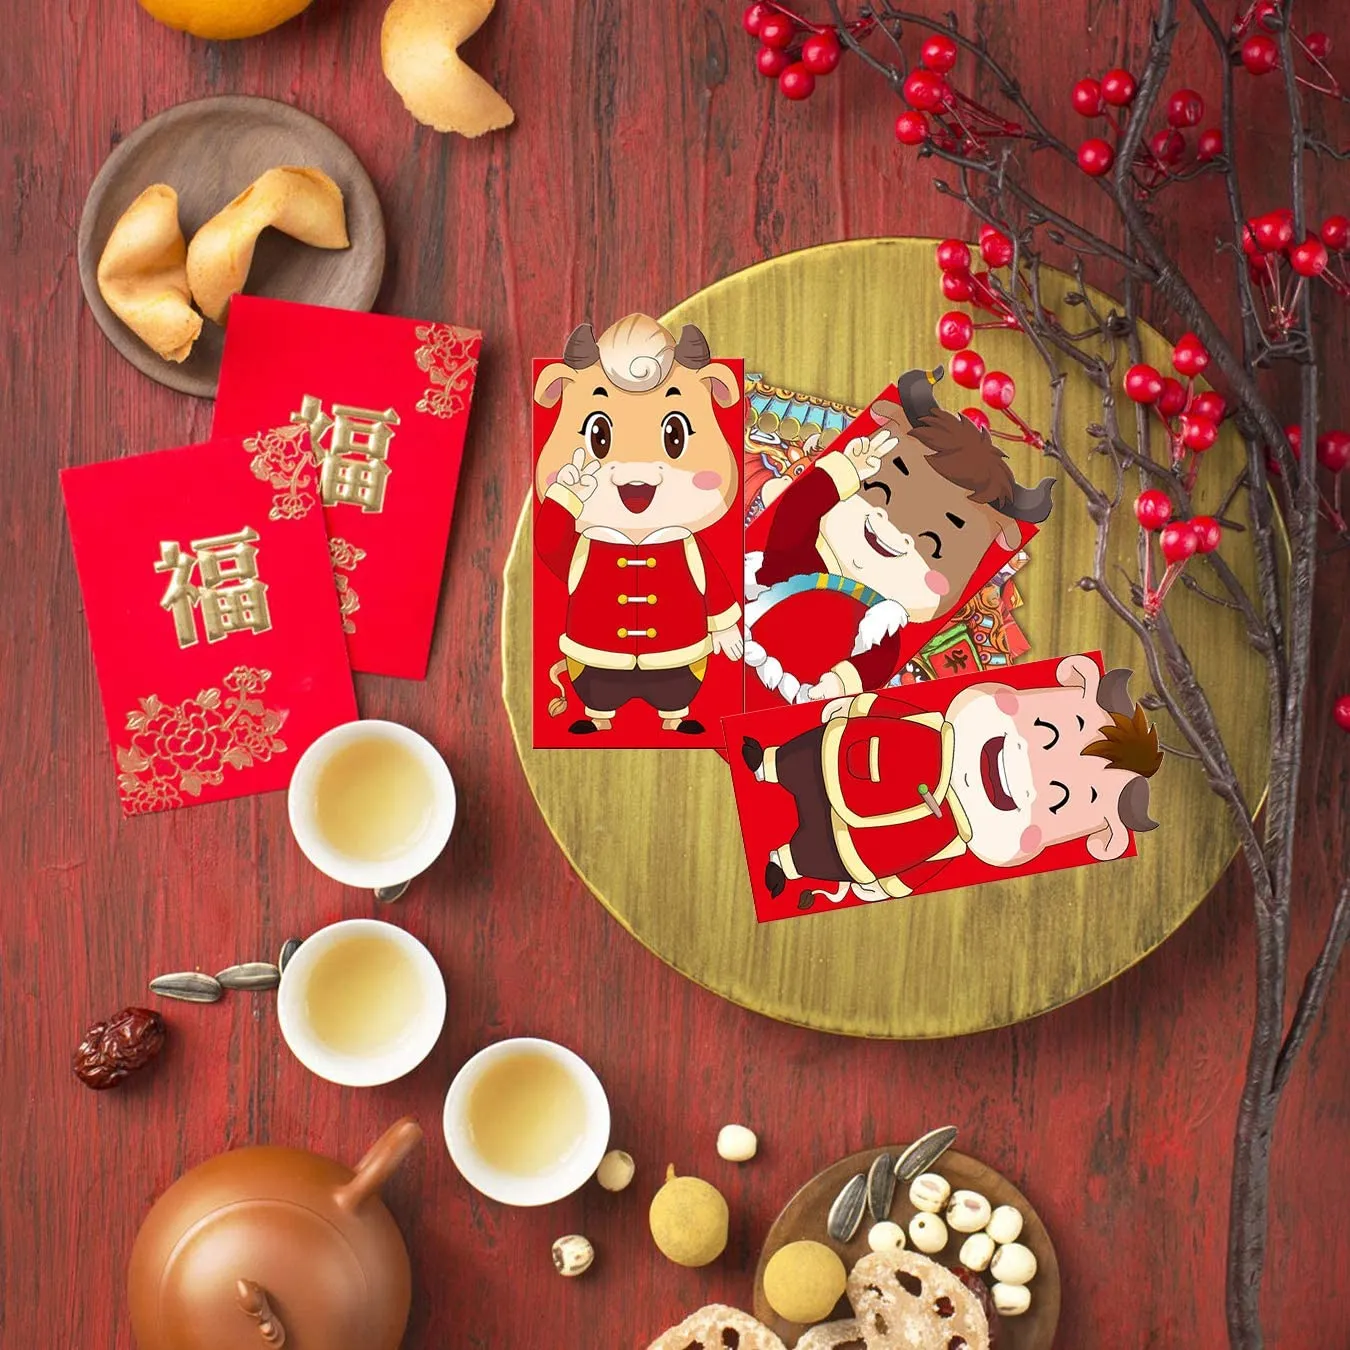 Chiński Nowy Rok Czerwone Koperty 2021 Chińskie Czerwone Pakiety Prezent Pieniądze Koperty Boże Narodzenie Wiosna Festiwal DHL